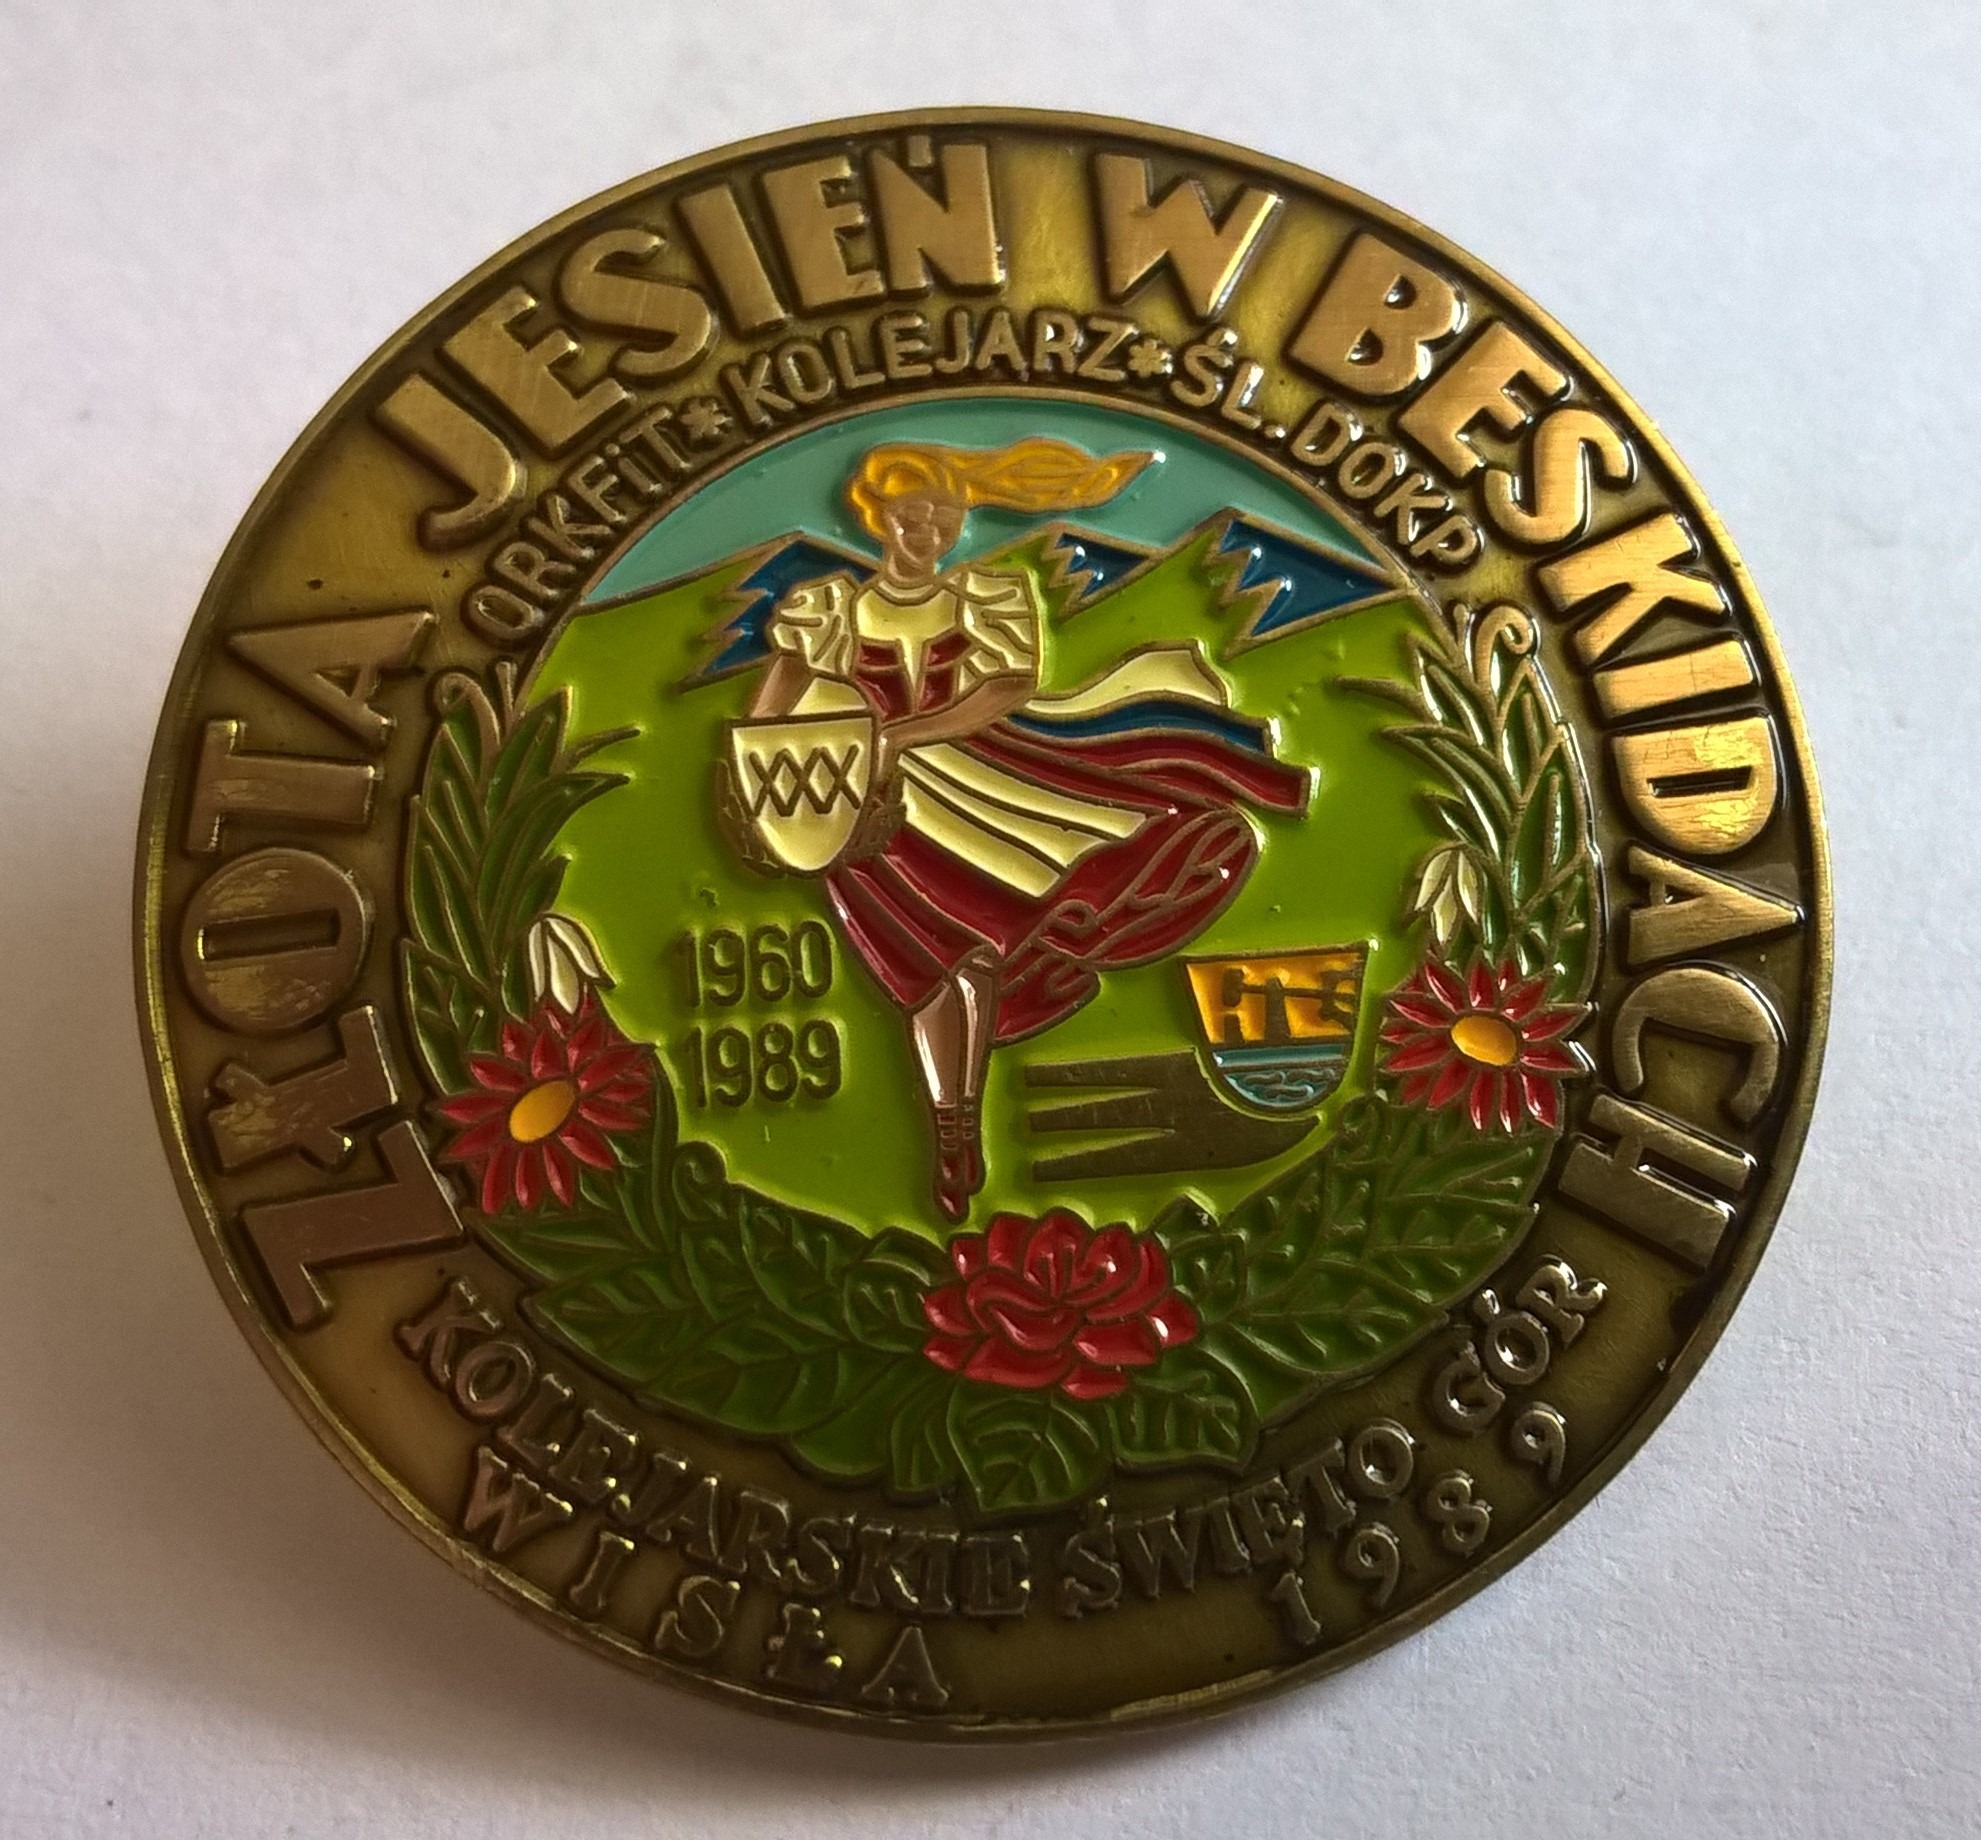 Odznaka - Złota Jesień w Beskidach, Kolejarskie Święto Gór, Wisła 1989